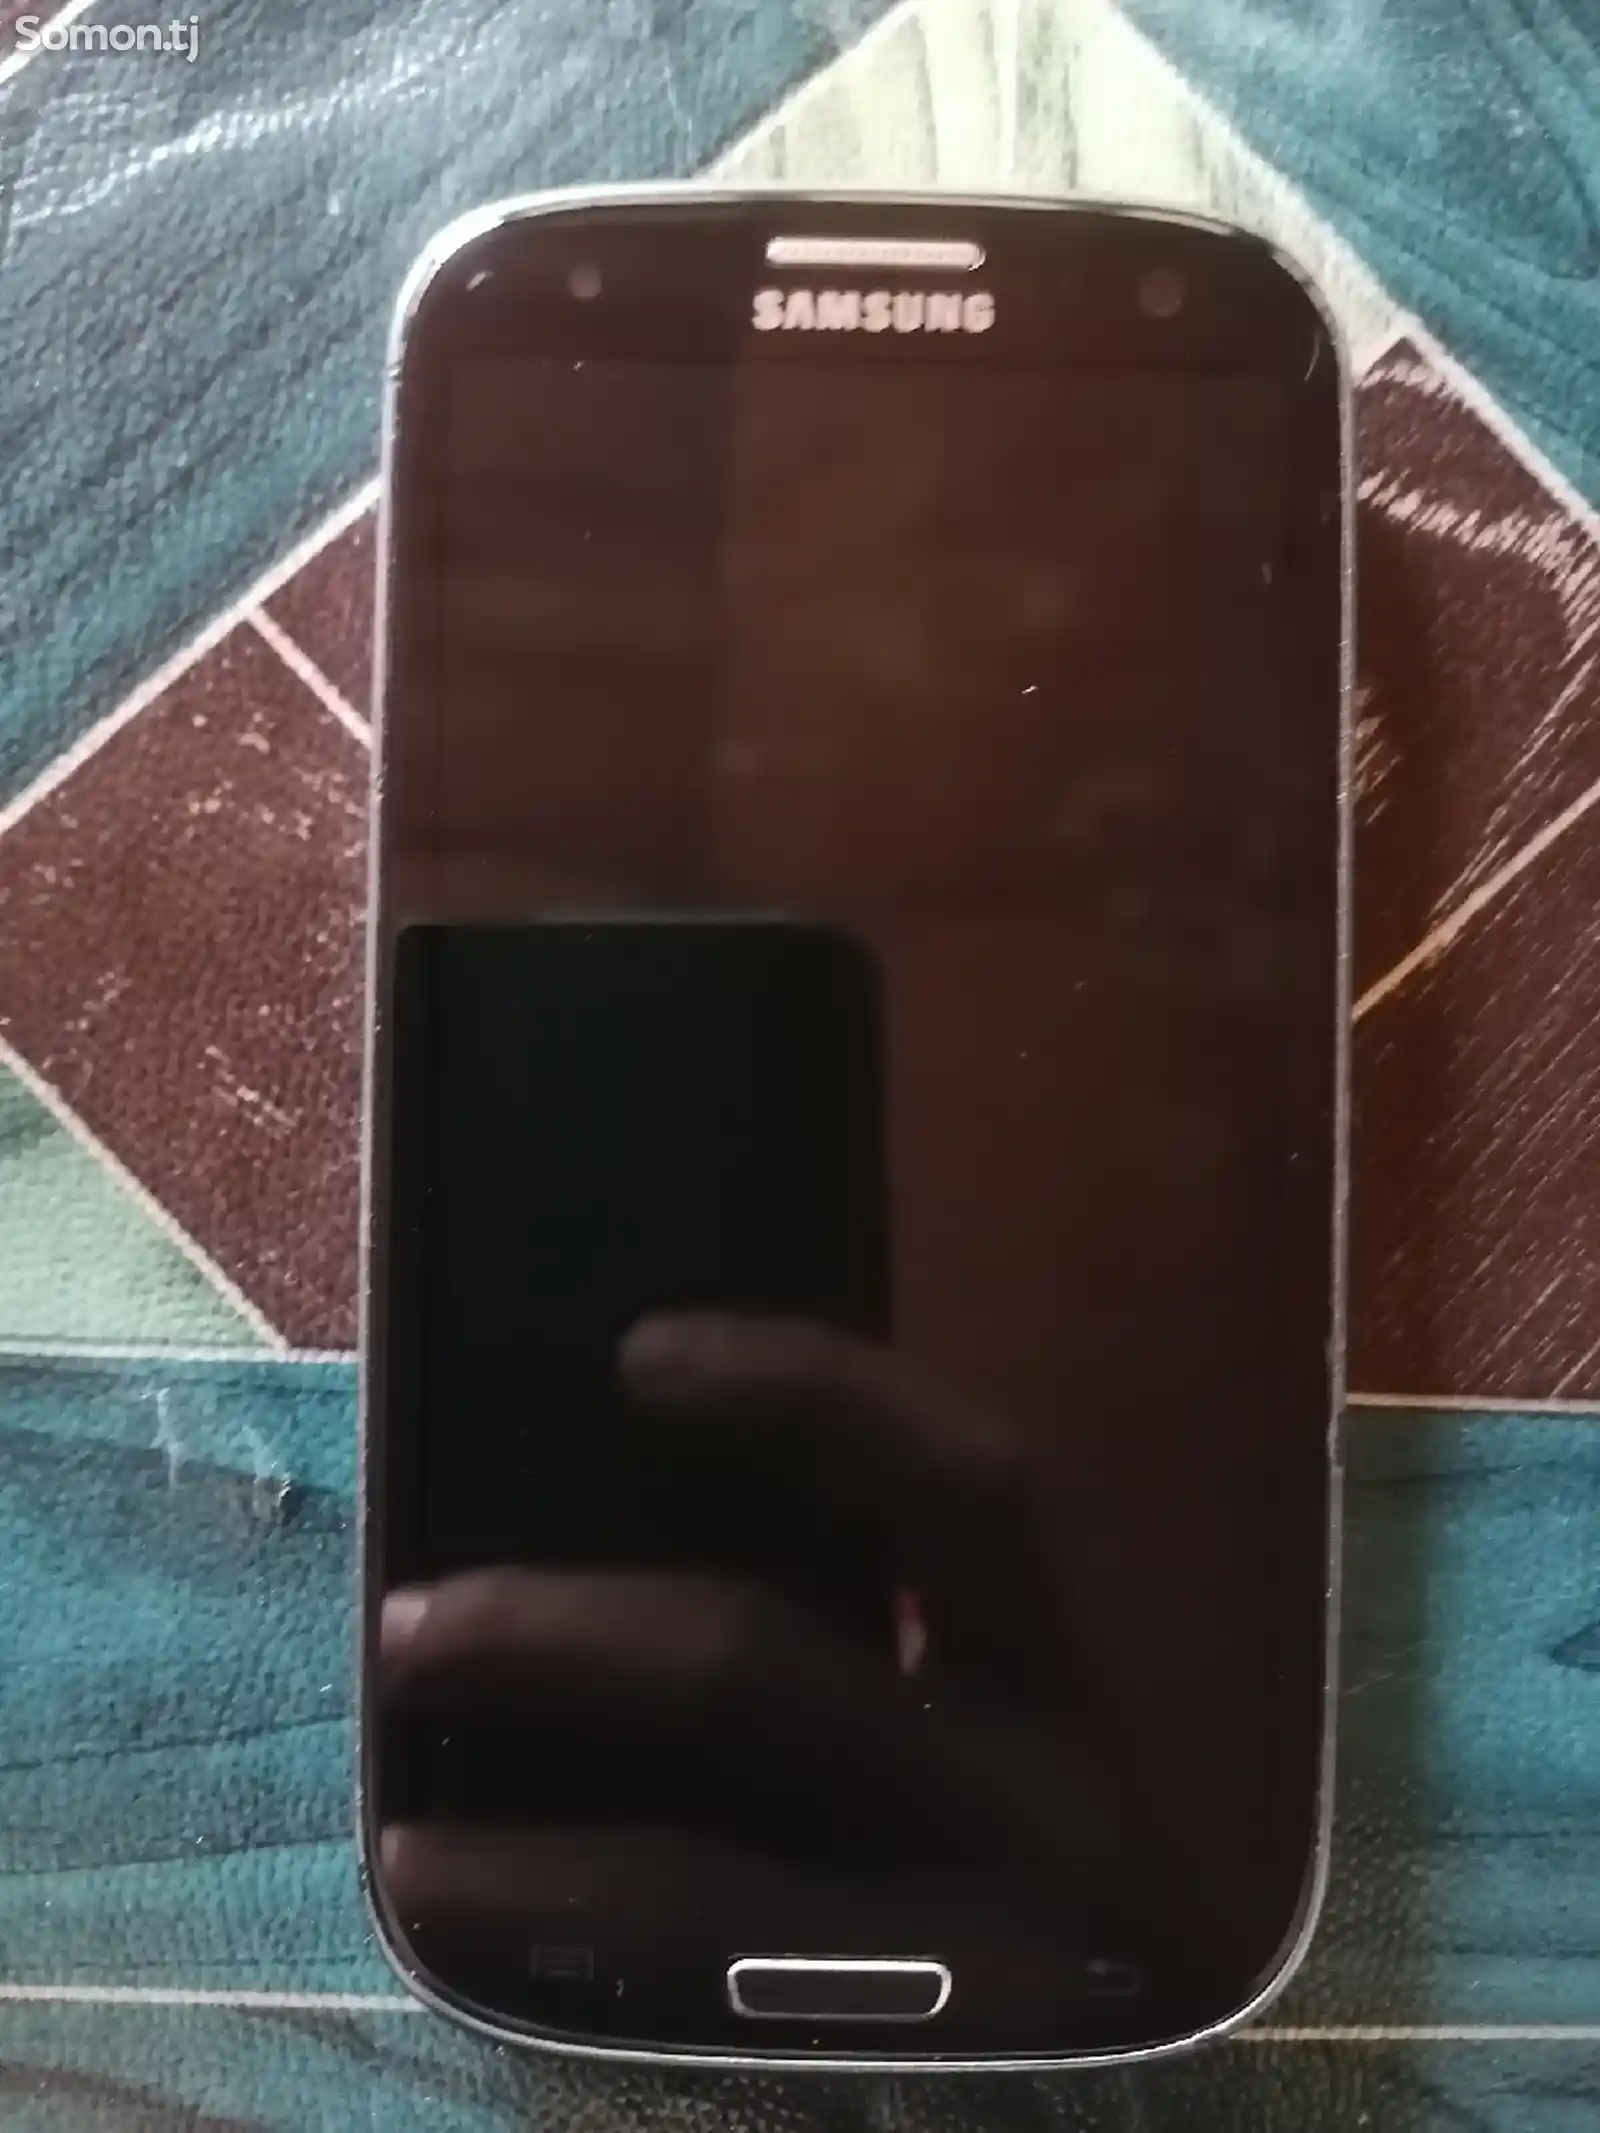 Samsung Galaxy S lll Neo-2